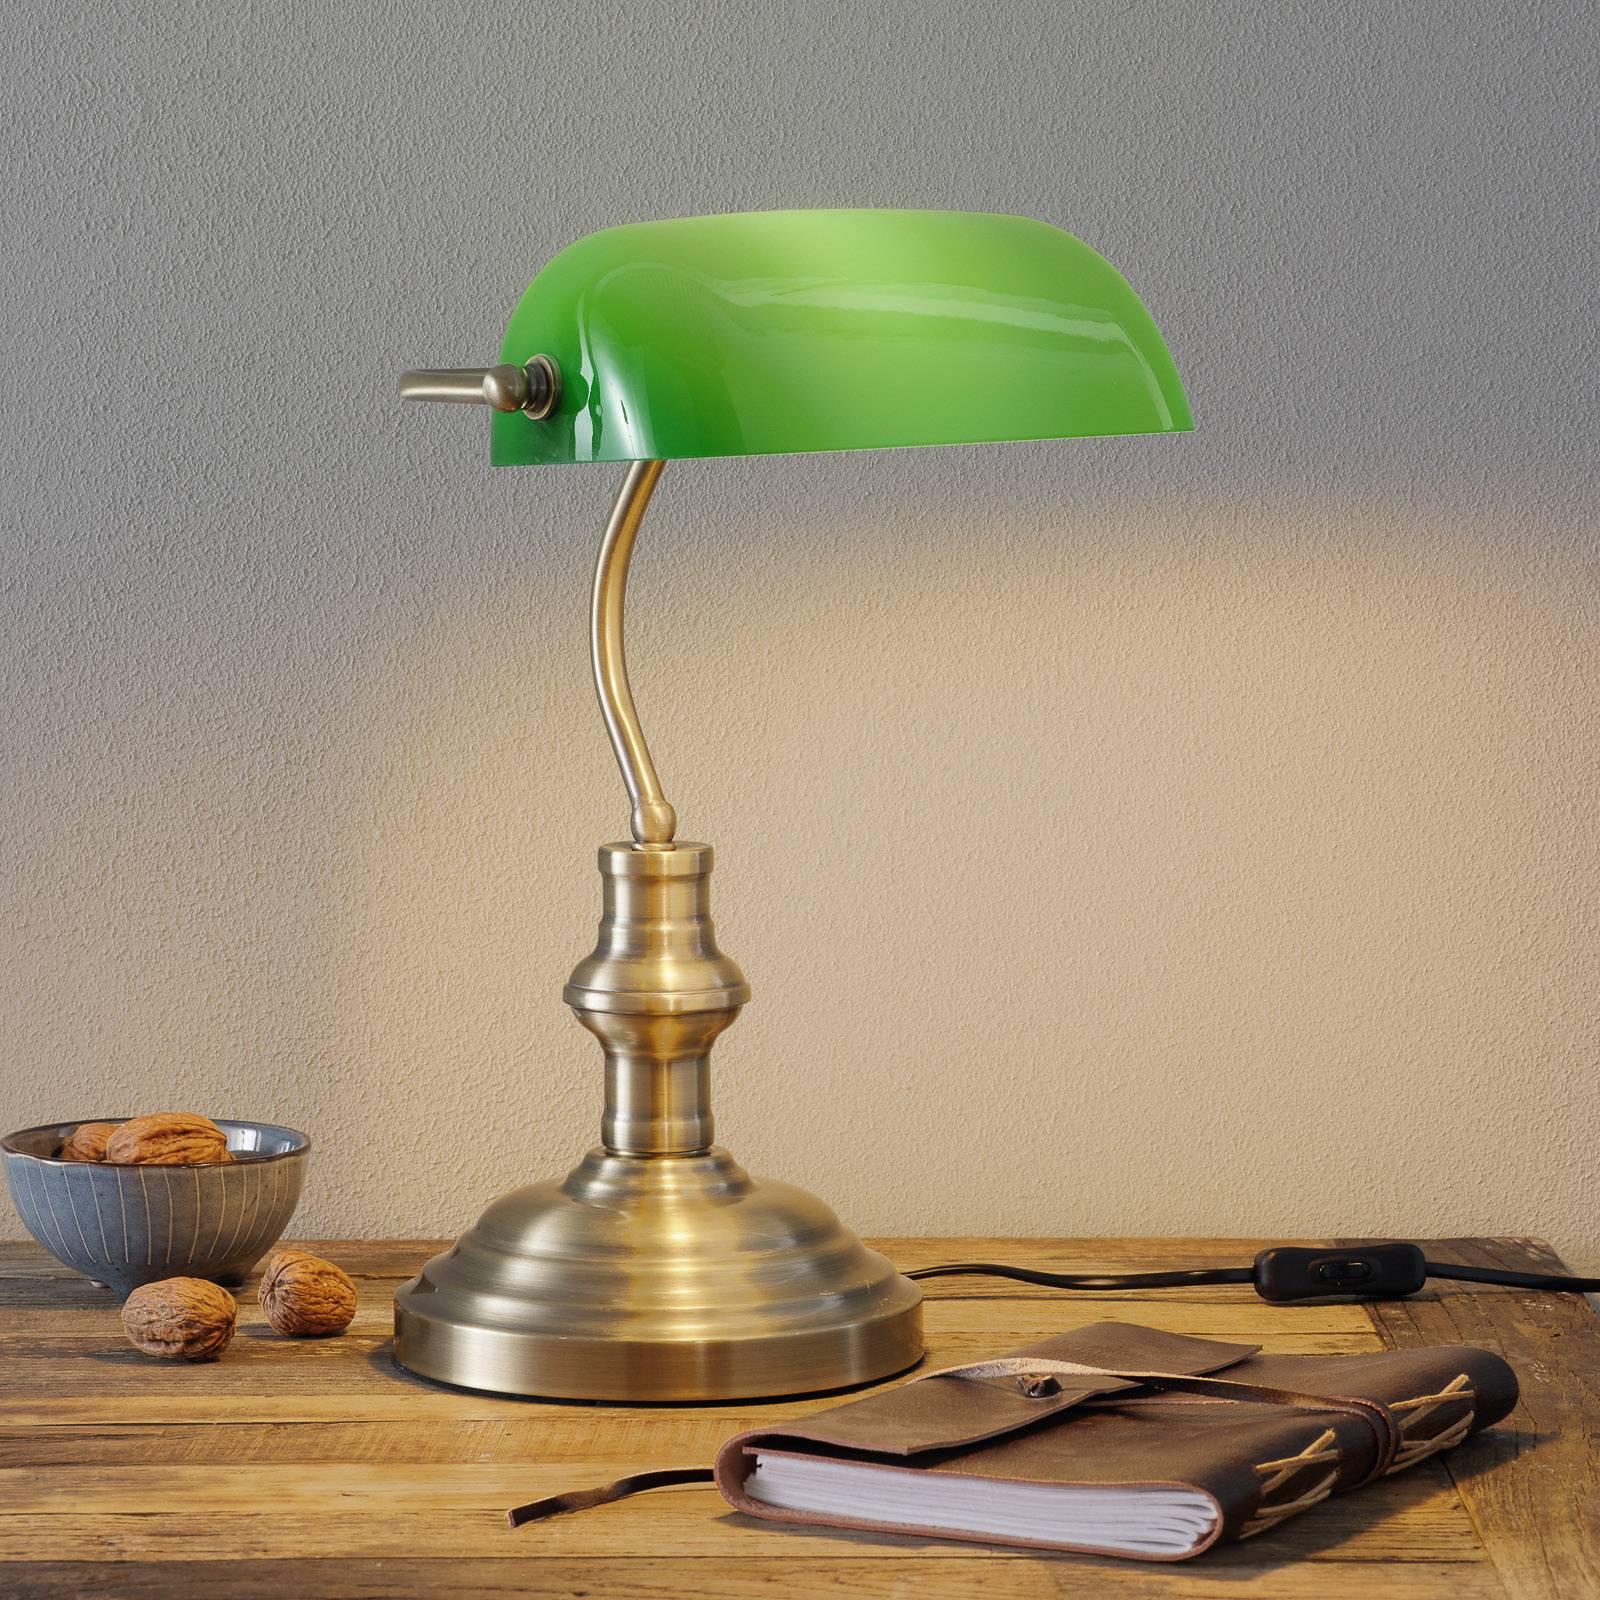 Bankers klassisk bordlampe 42 cm grøn